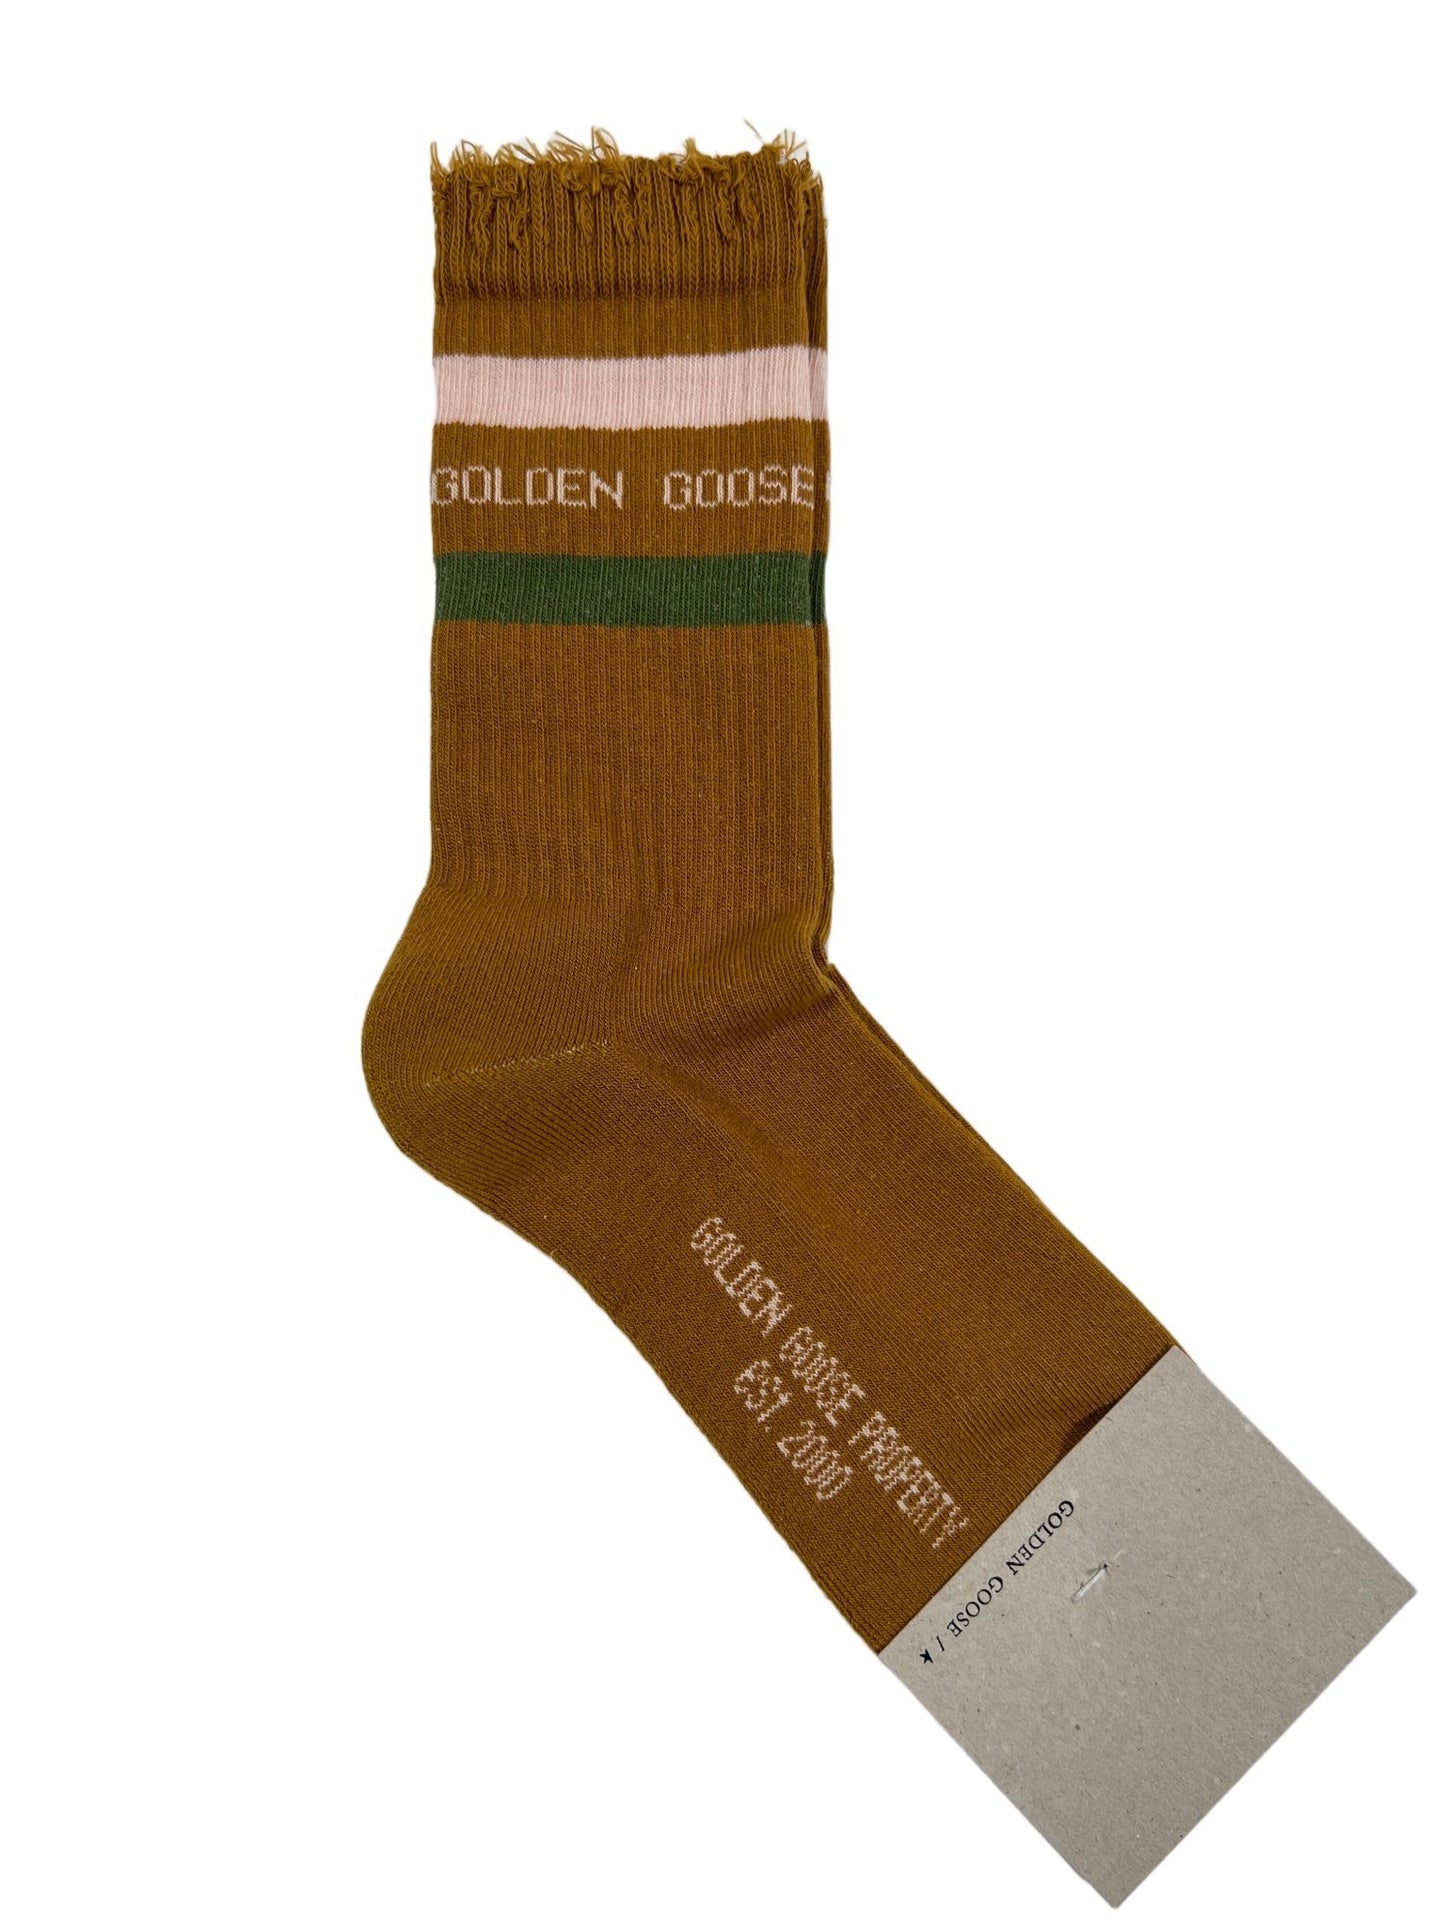 Probus GOLDEN GOOSE GUP00883 SOCKS HIGH RIB BROWN/GREEN/PINK M